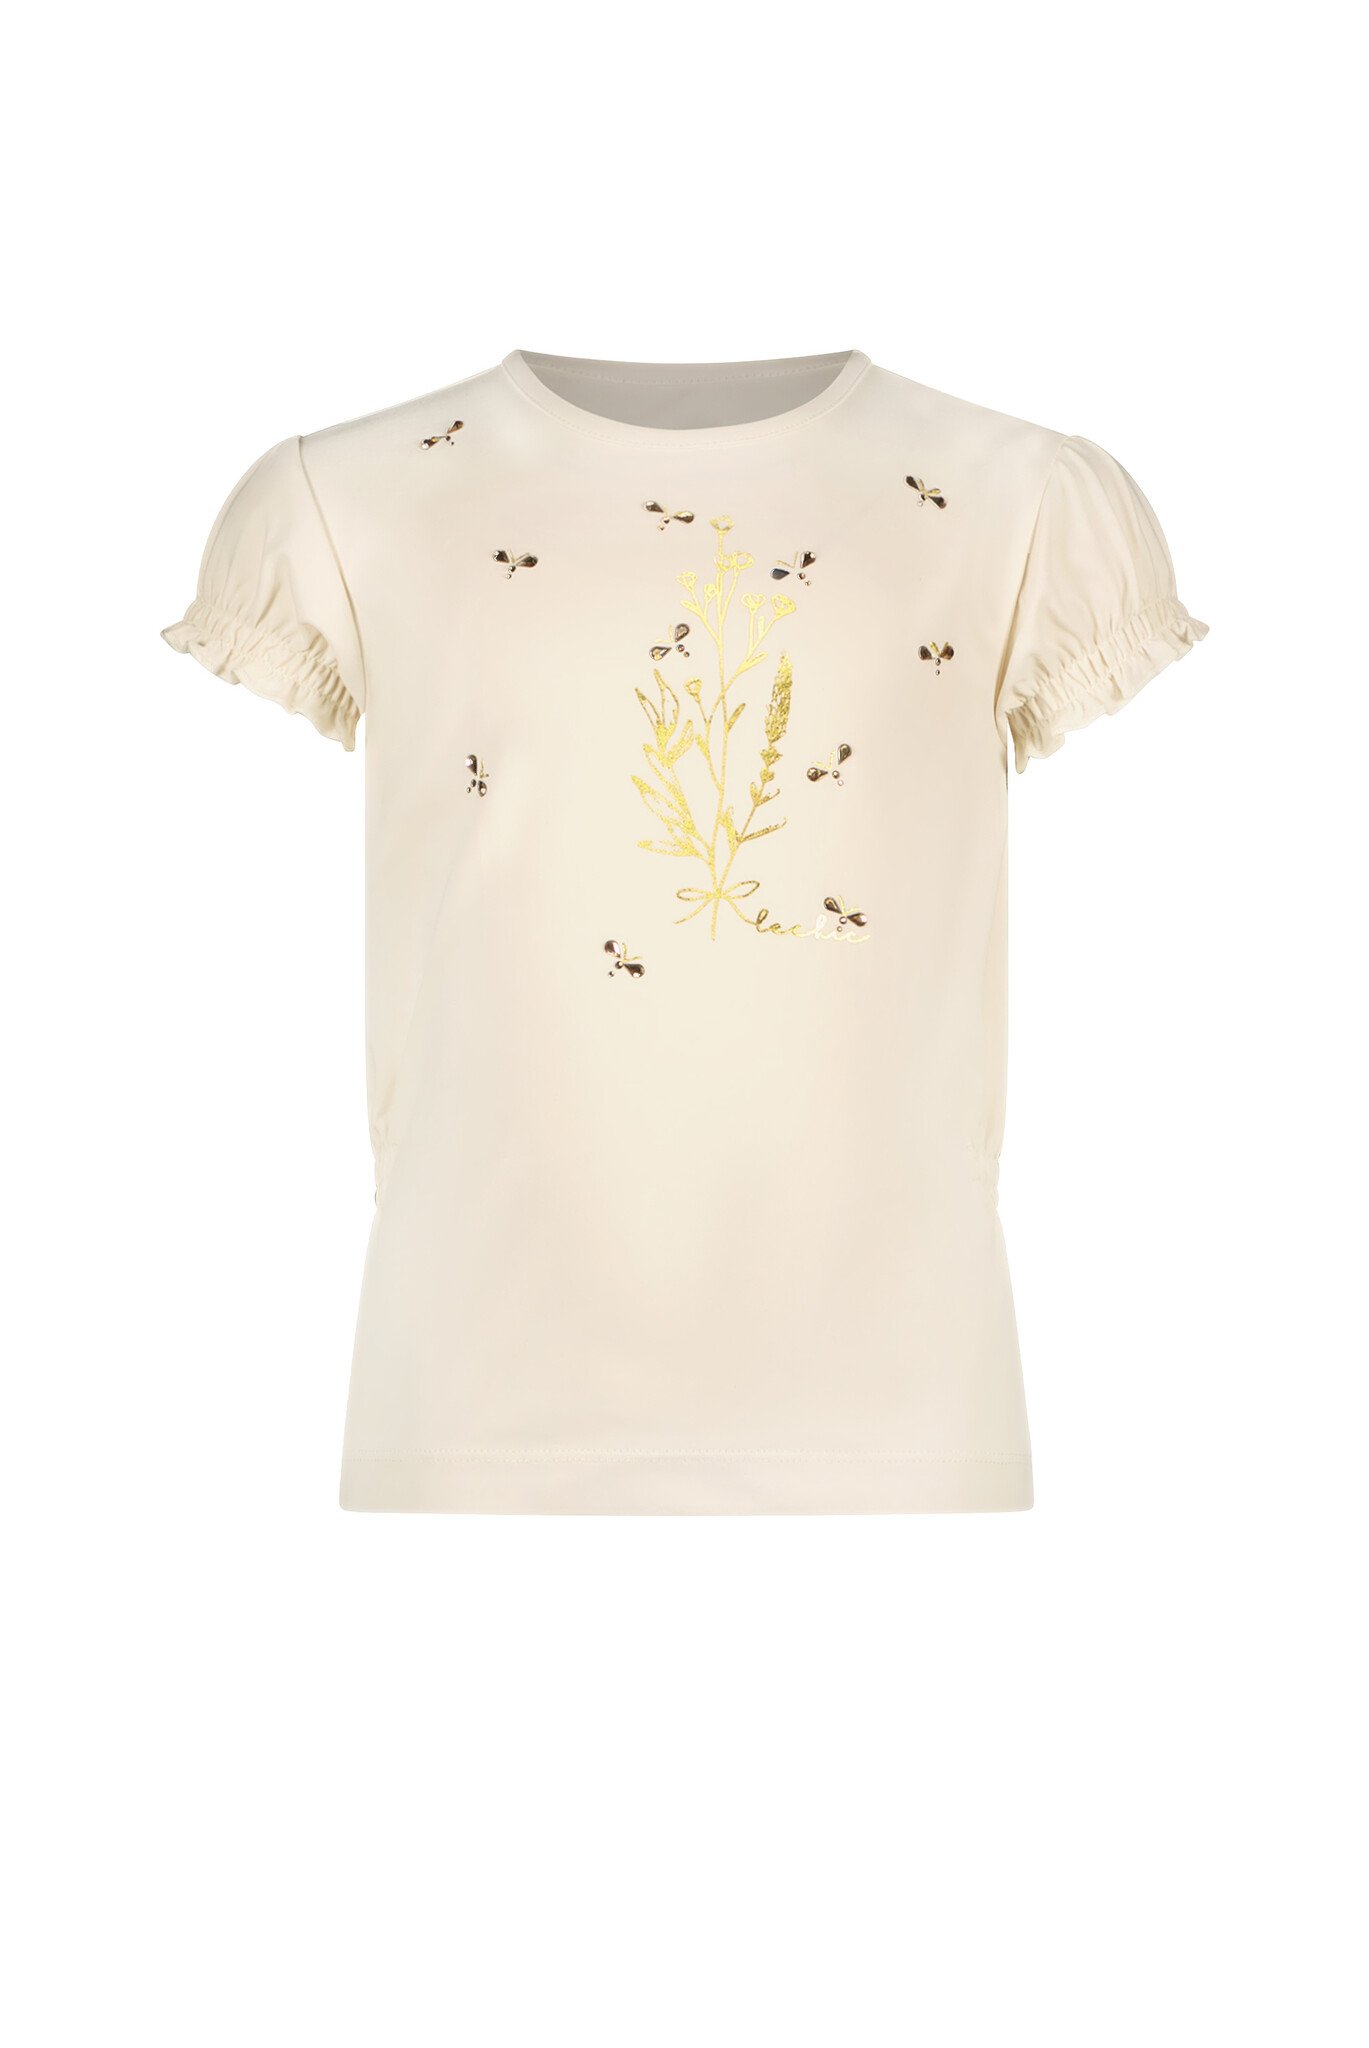 Meisjes t-shirt bloemen en bijtjes - Nomsa - Pearled ivoor wit